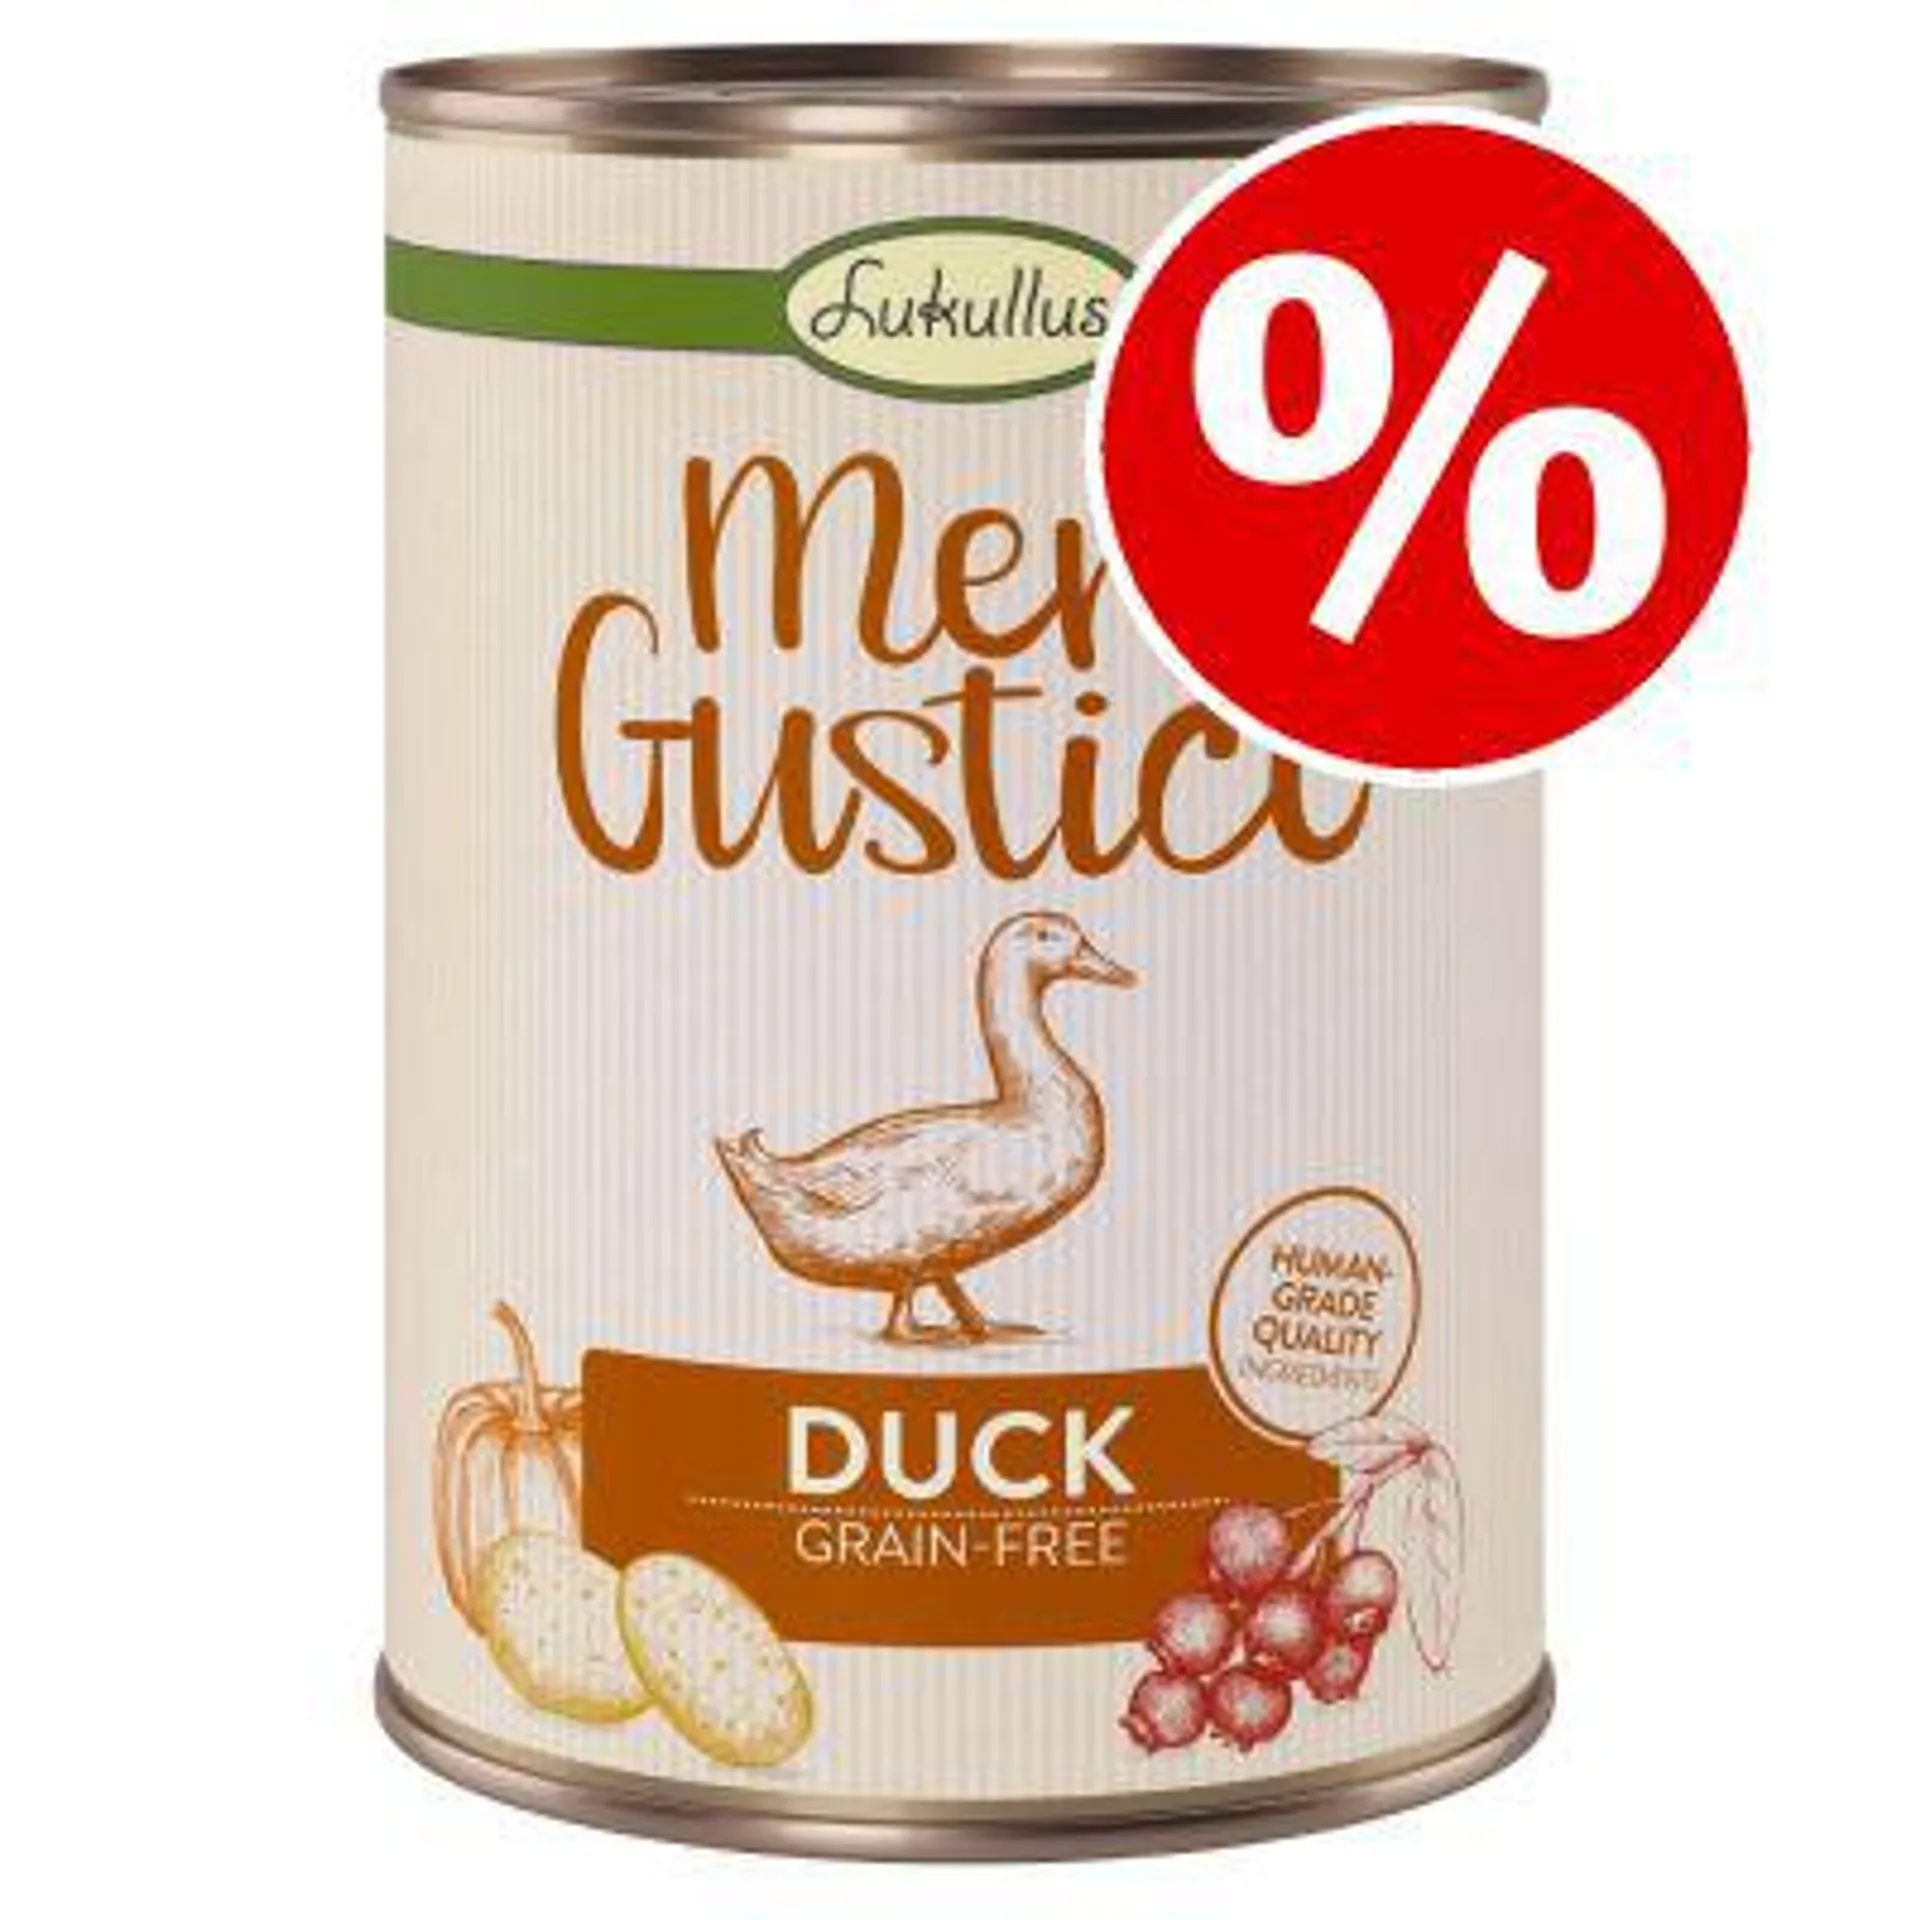 6 x 400g Lukullus Menu Gustico Wet Dog Food - Special Price!*